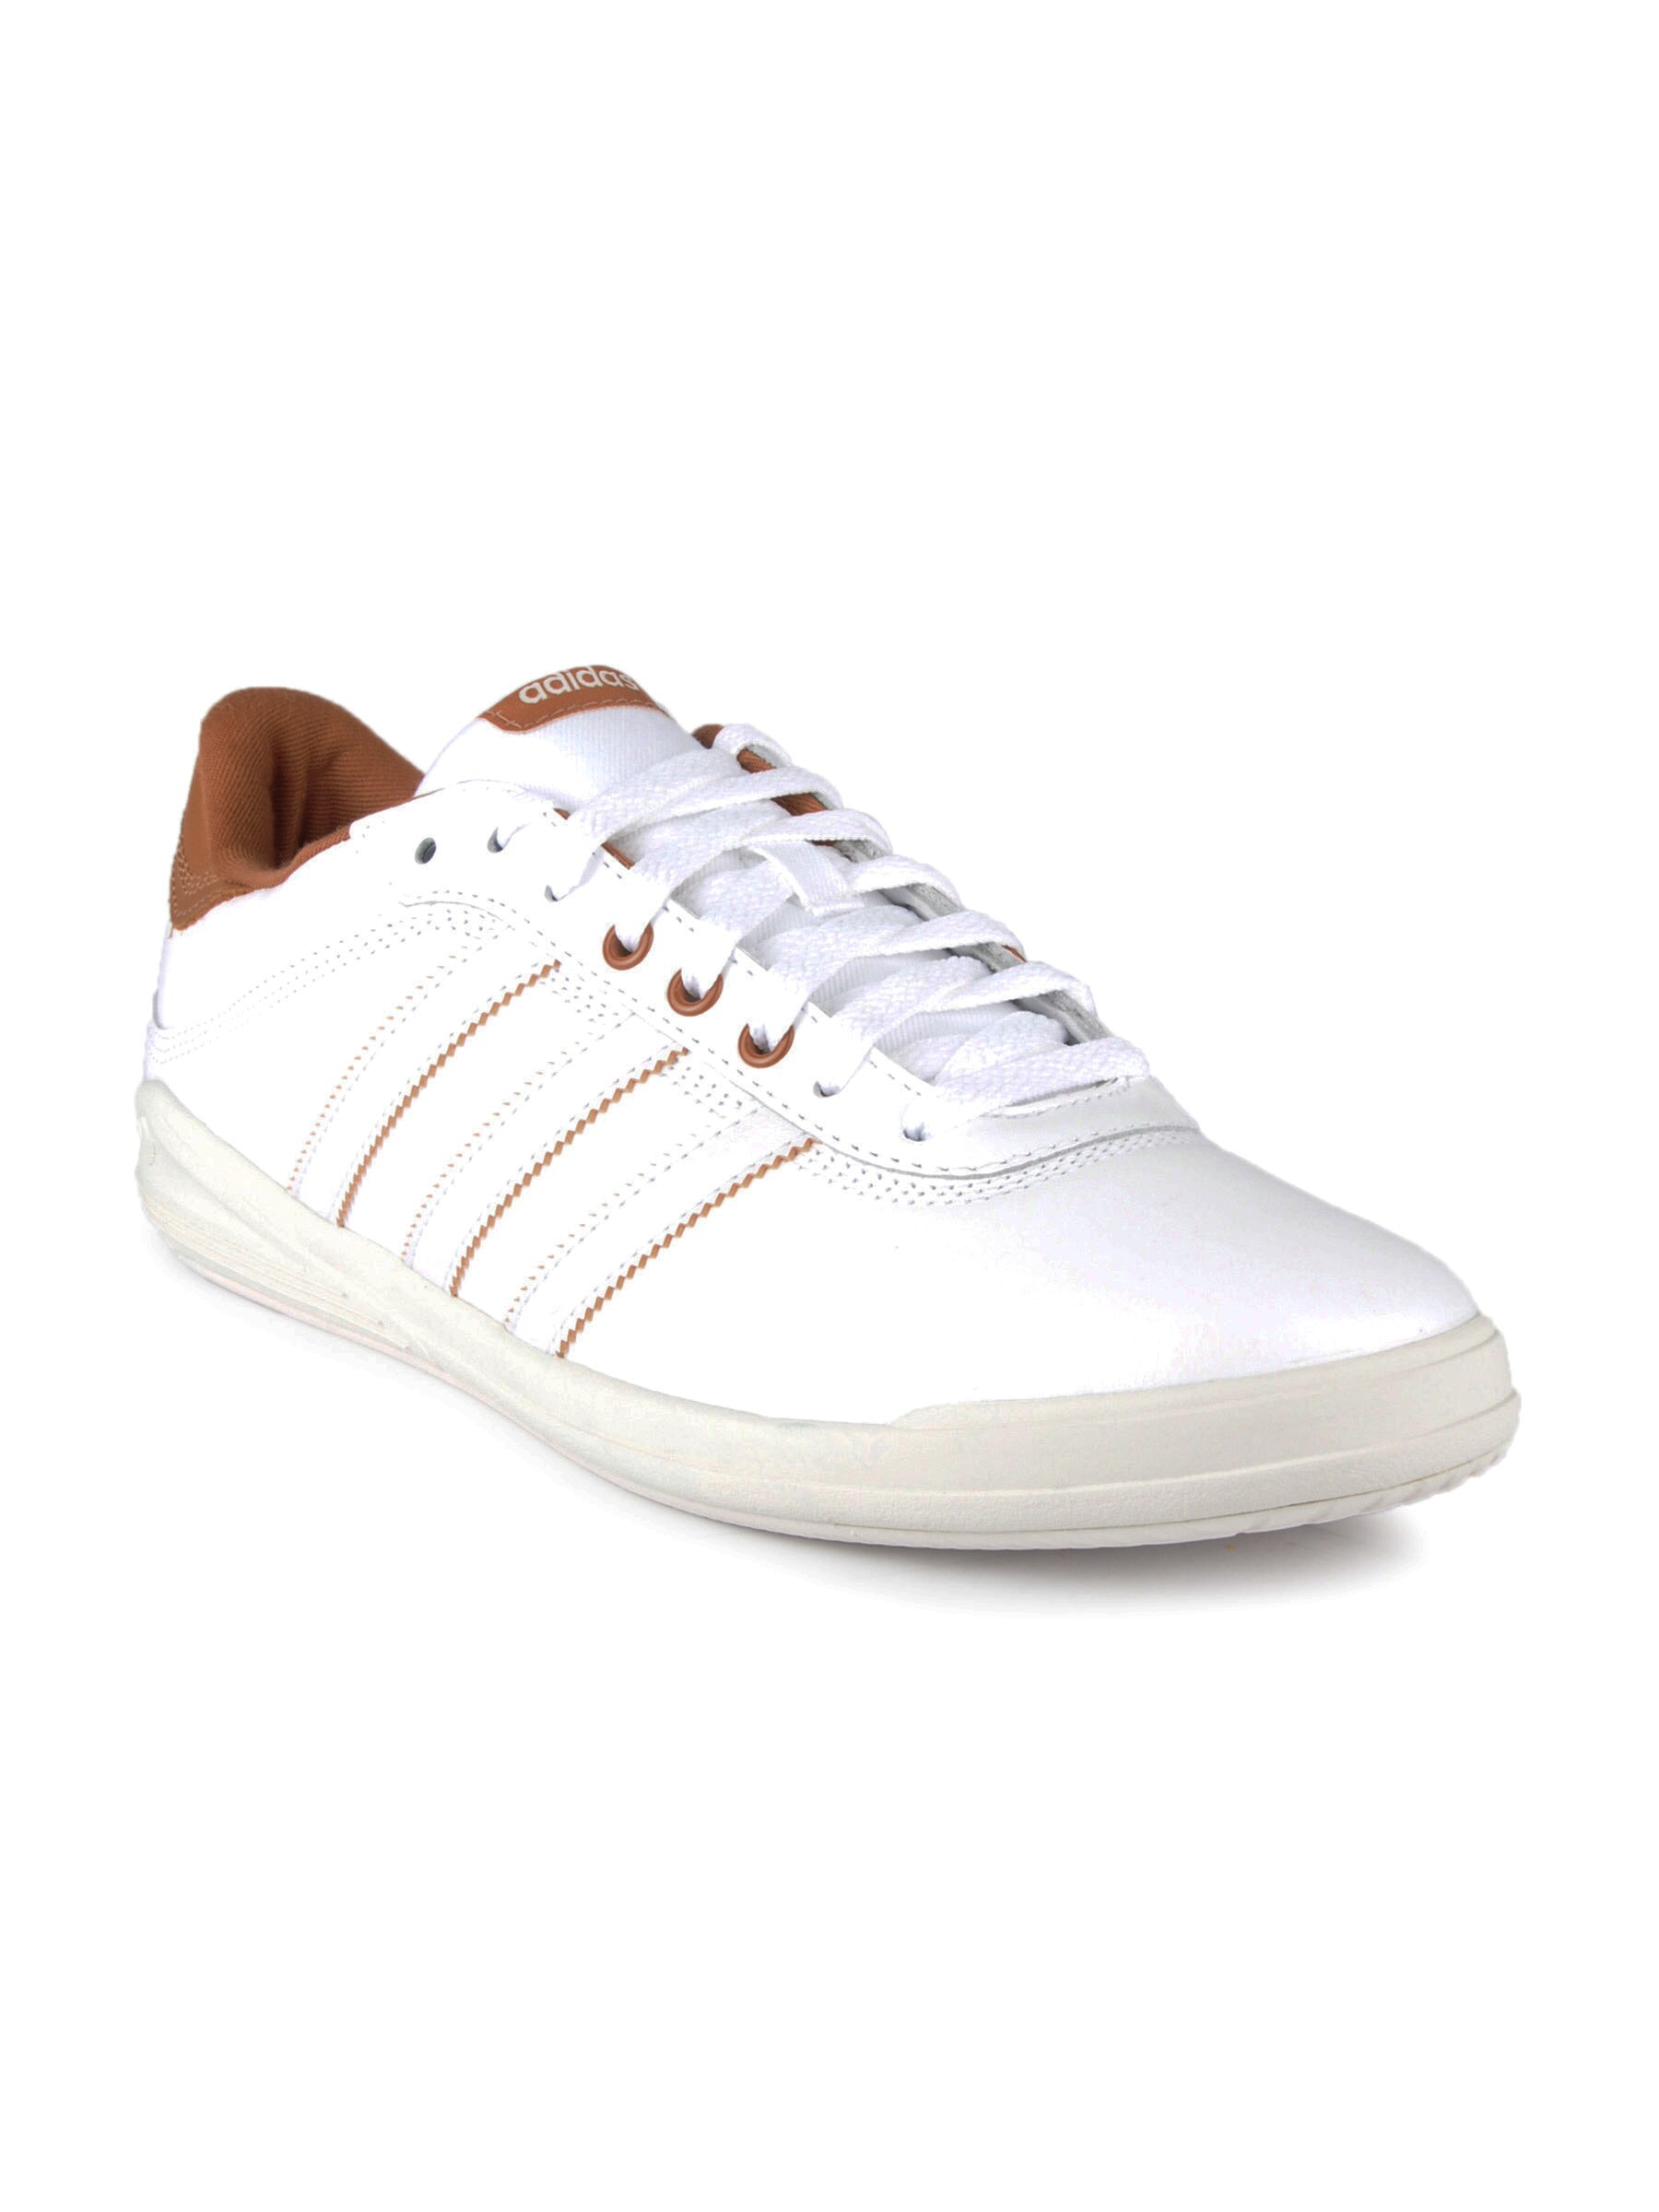 ADIDAS Originals Men Adi T Tennis White Casual Shoes